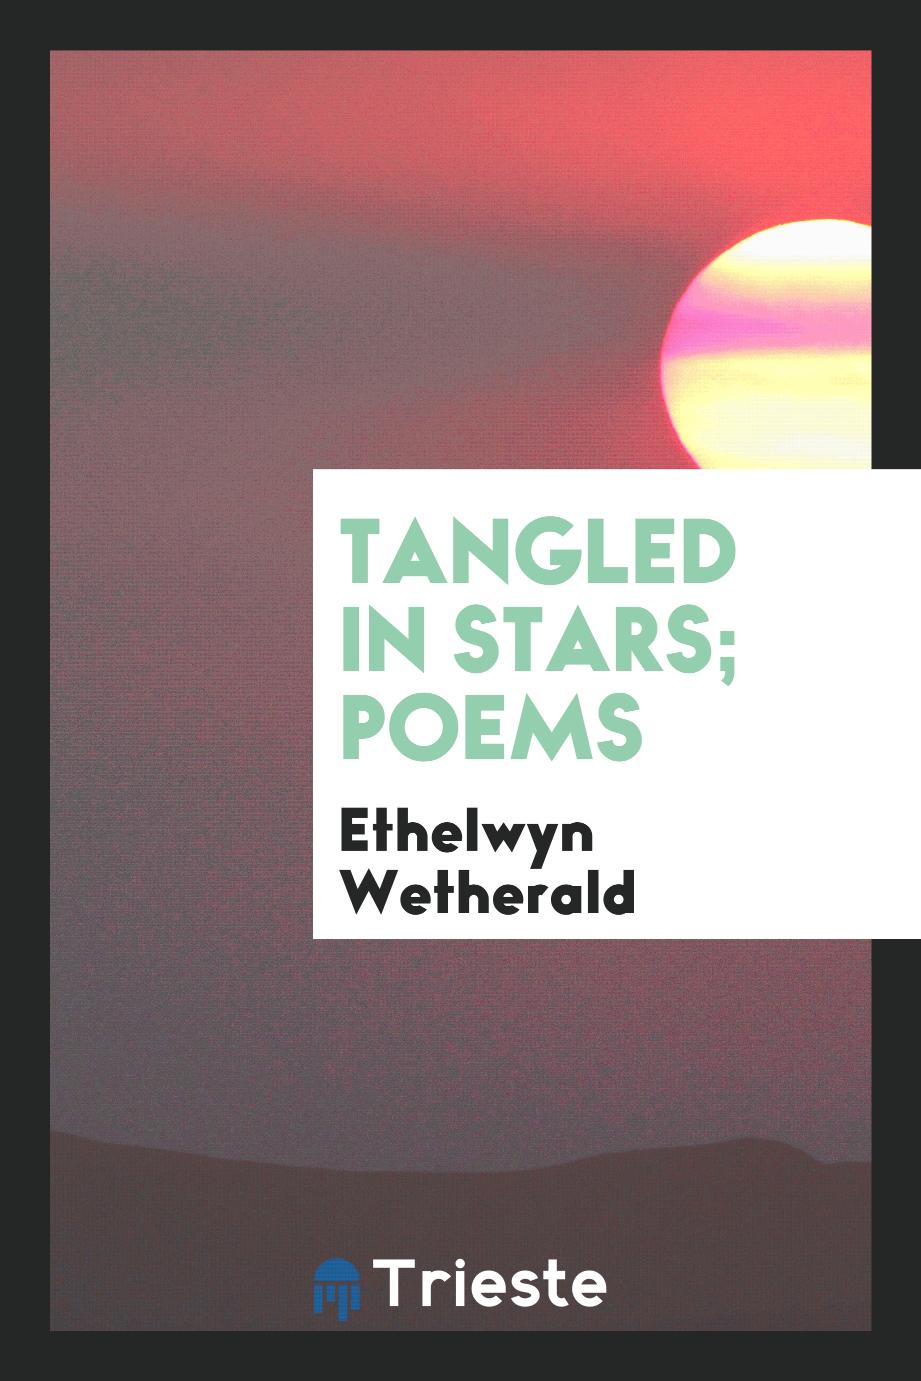 Tangled in stars; poems